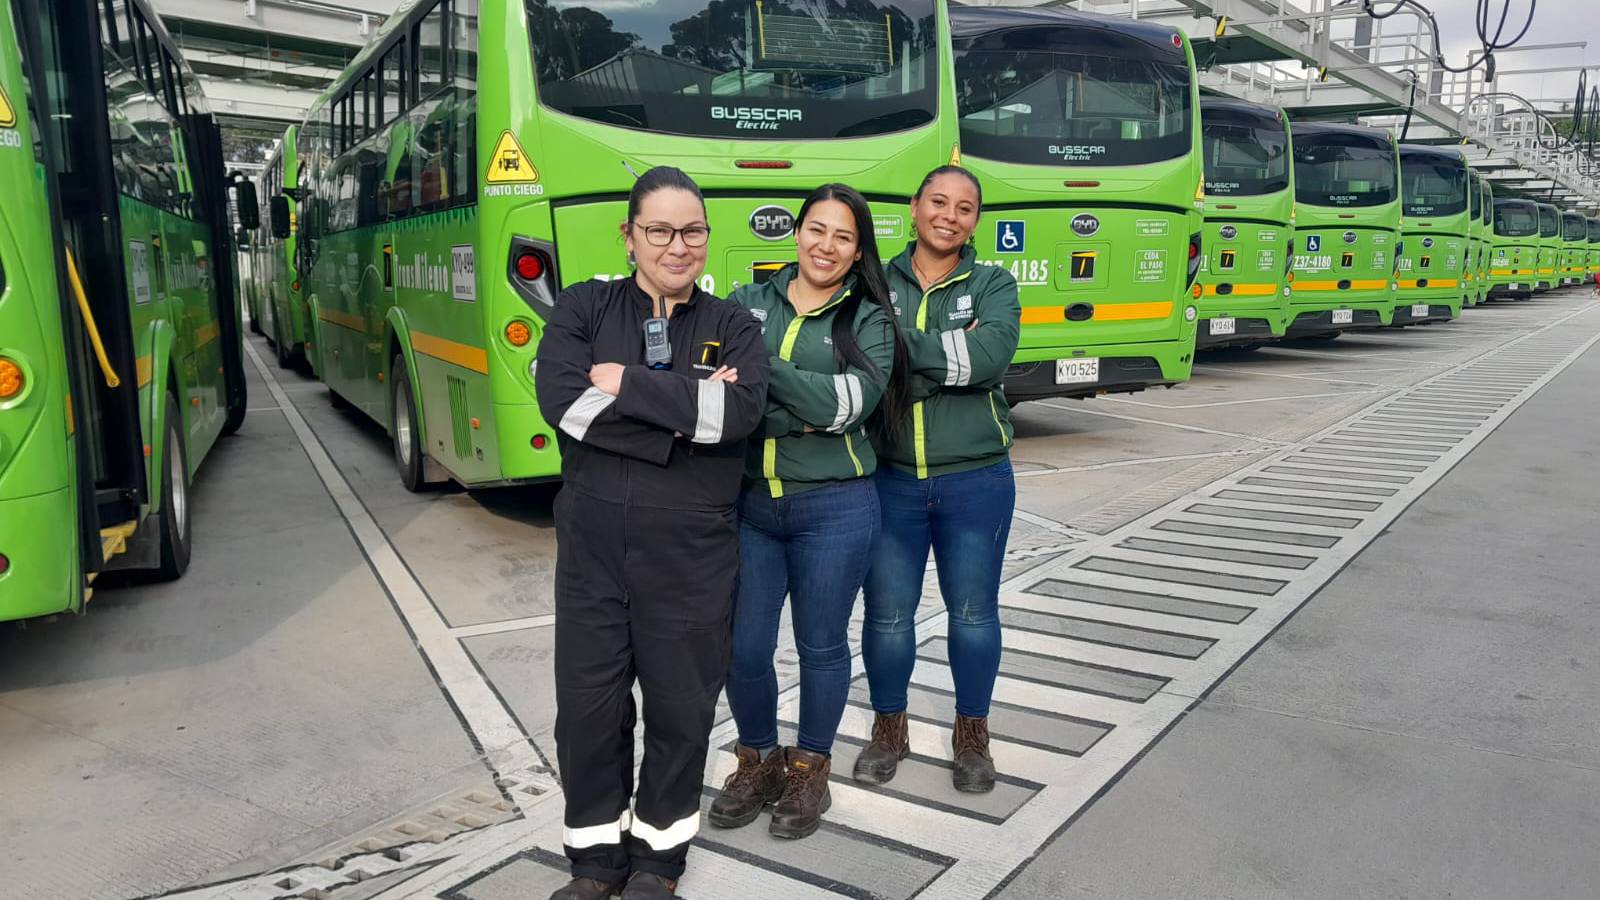 Una opción ecológica liderada por mujeres: Bogotá prueba un nuevo modelo de transporte público